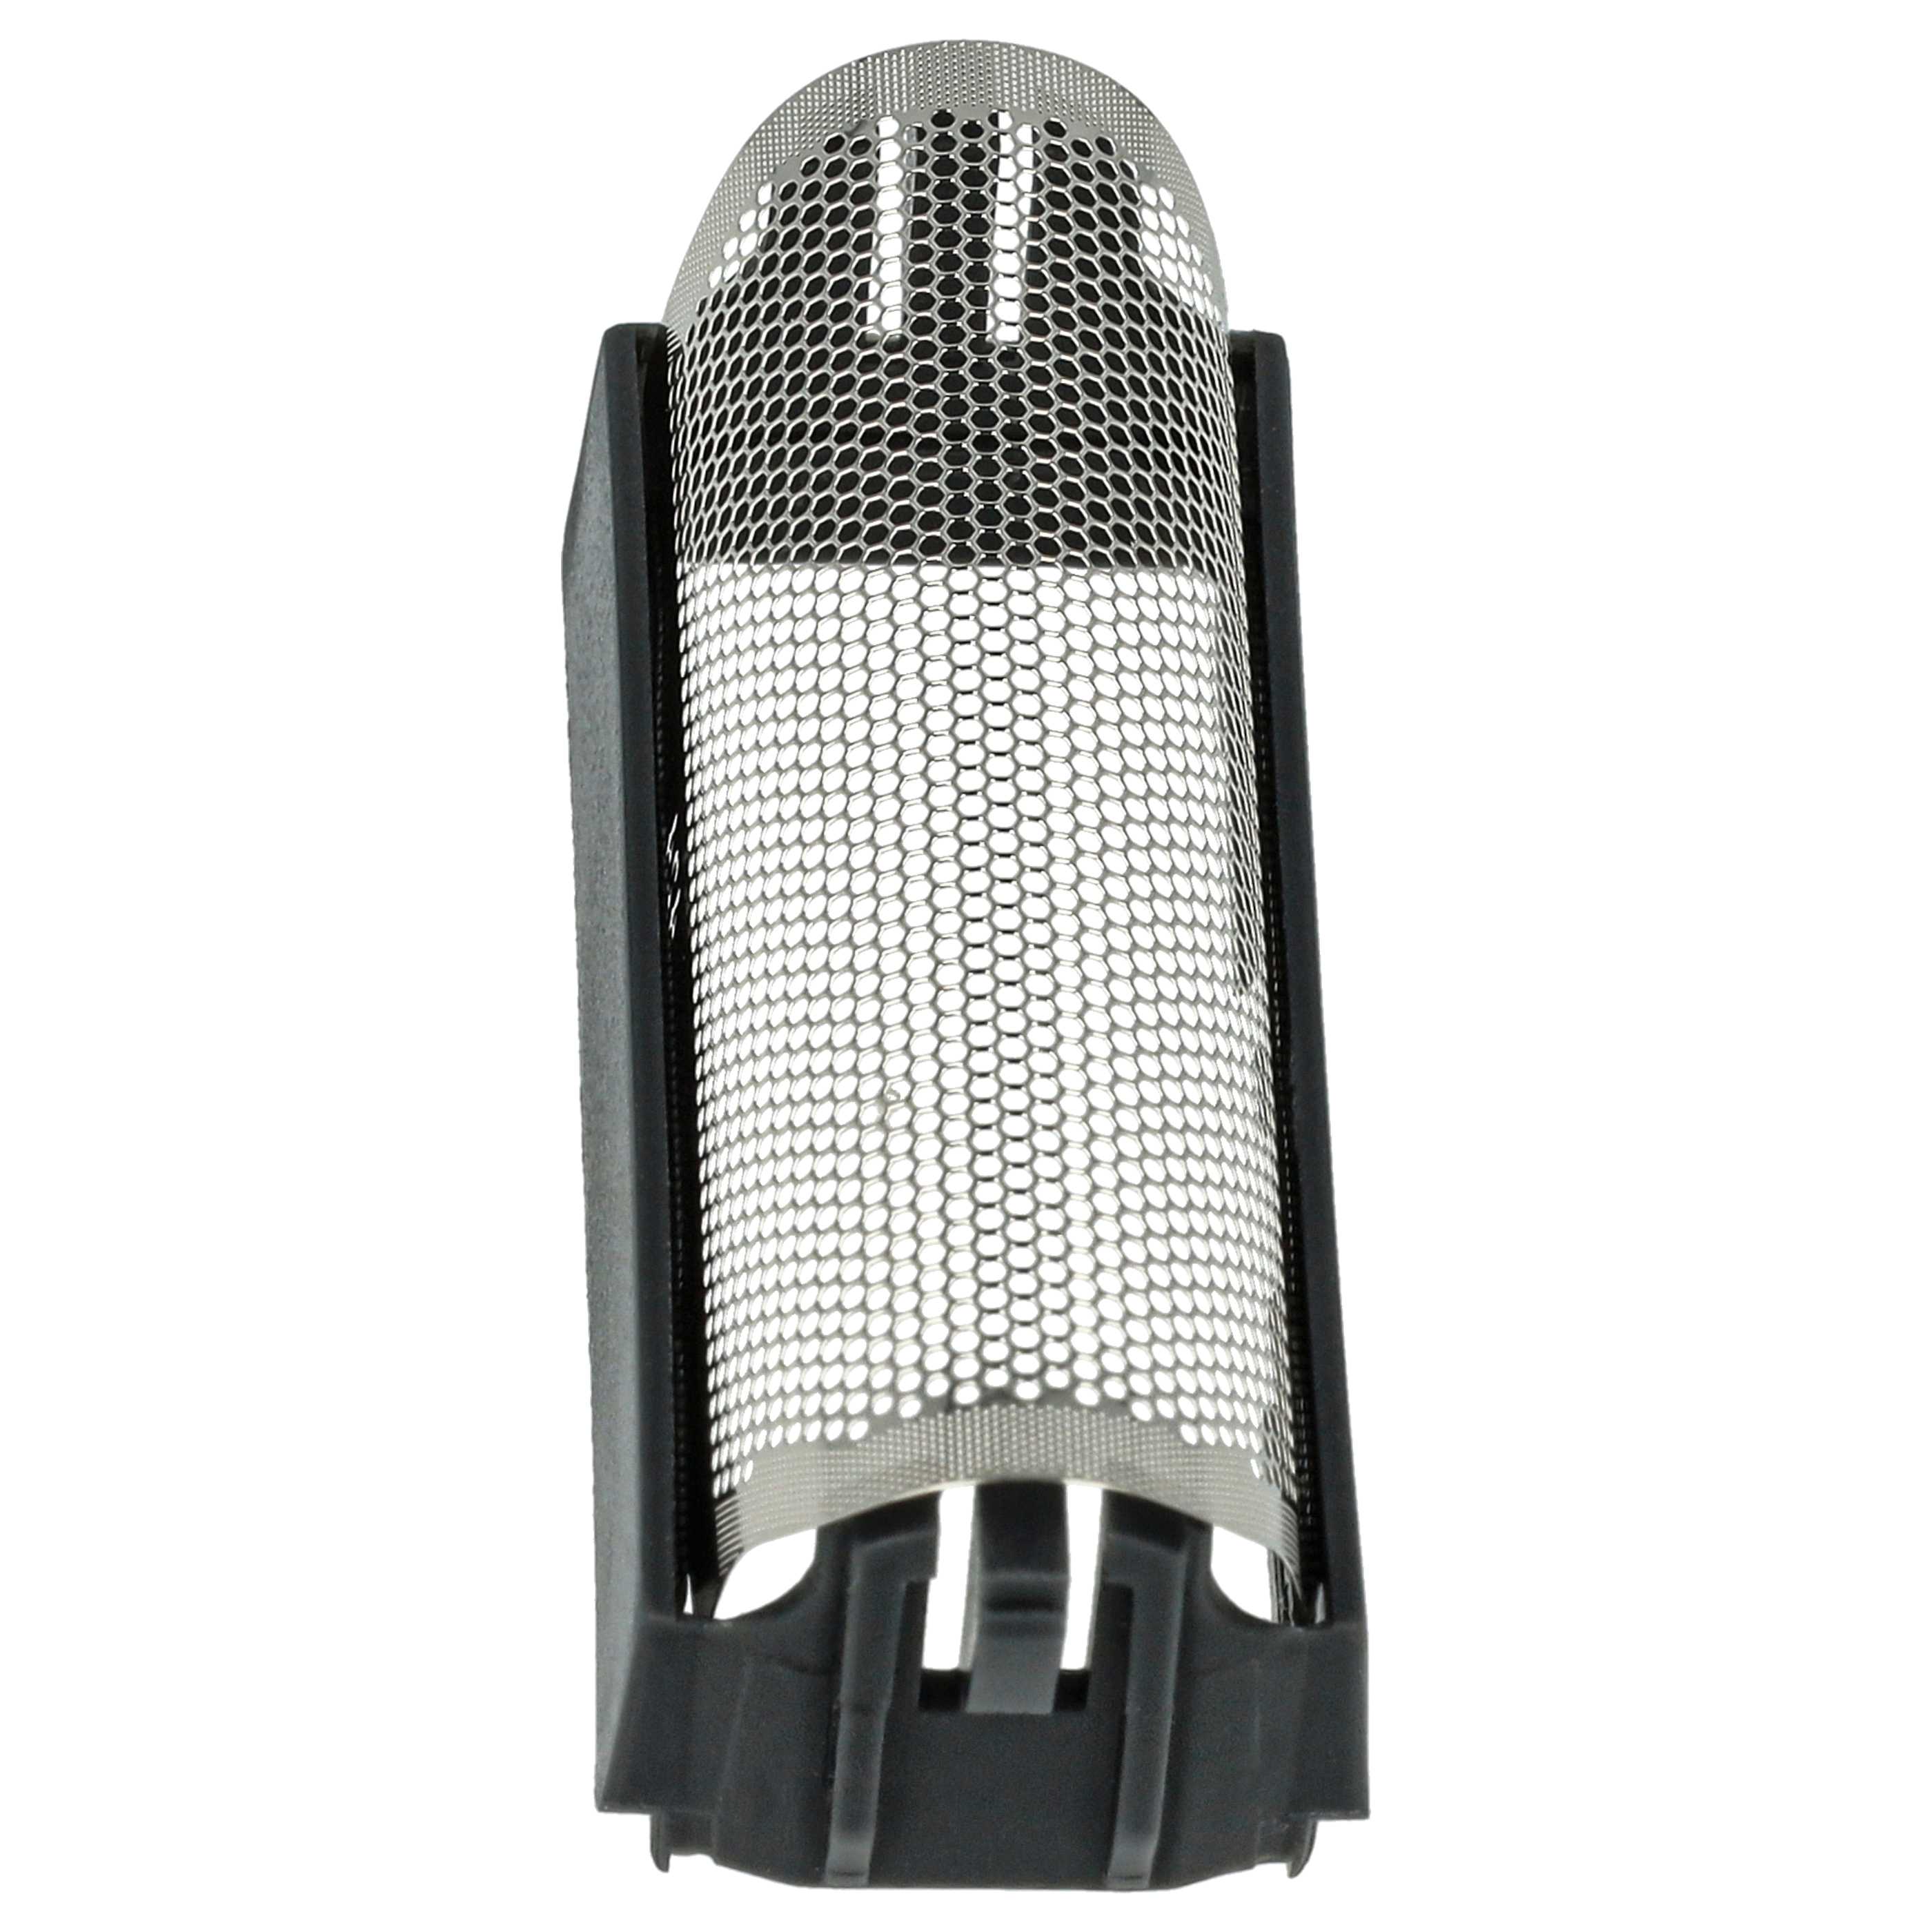 Lámina de corte reemplaza Braun 424 para afeitadoras Braun - incl. marco, negro/plata